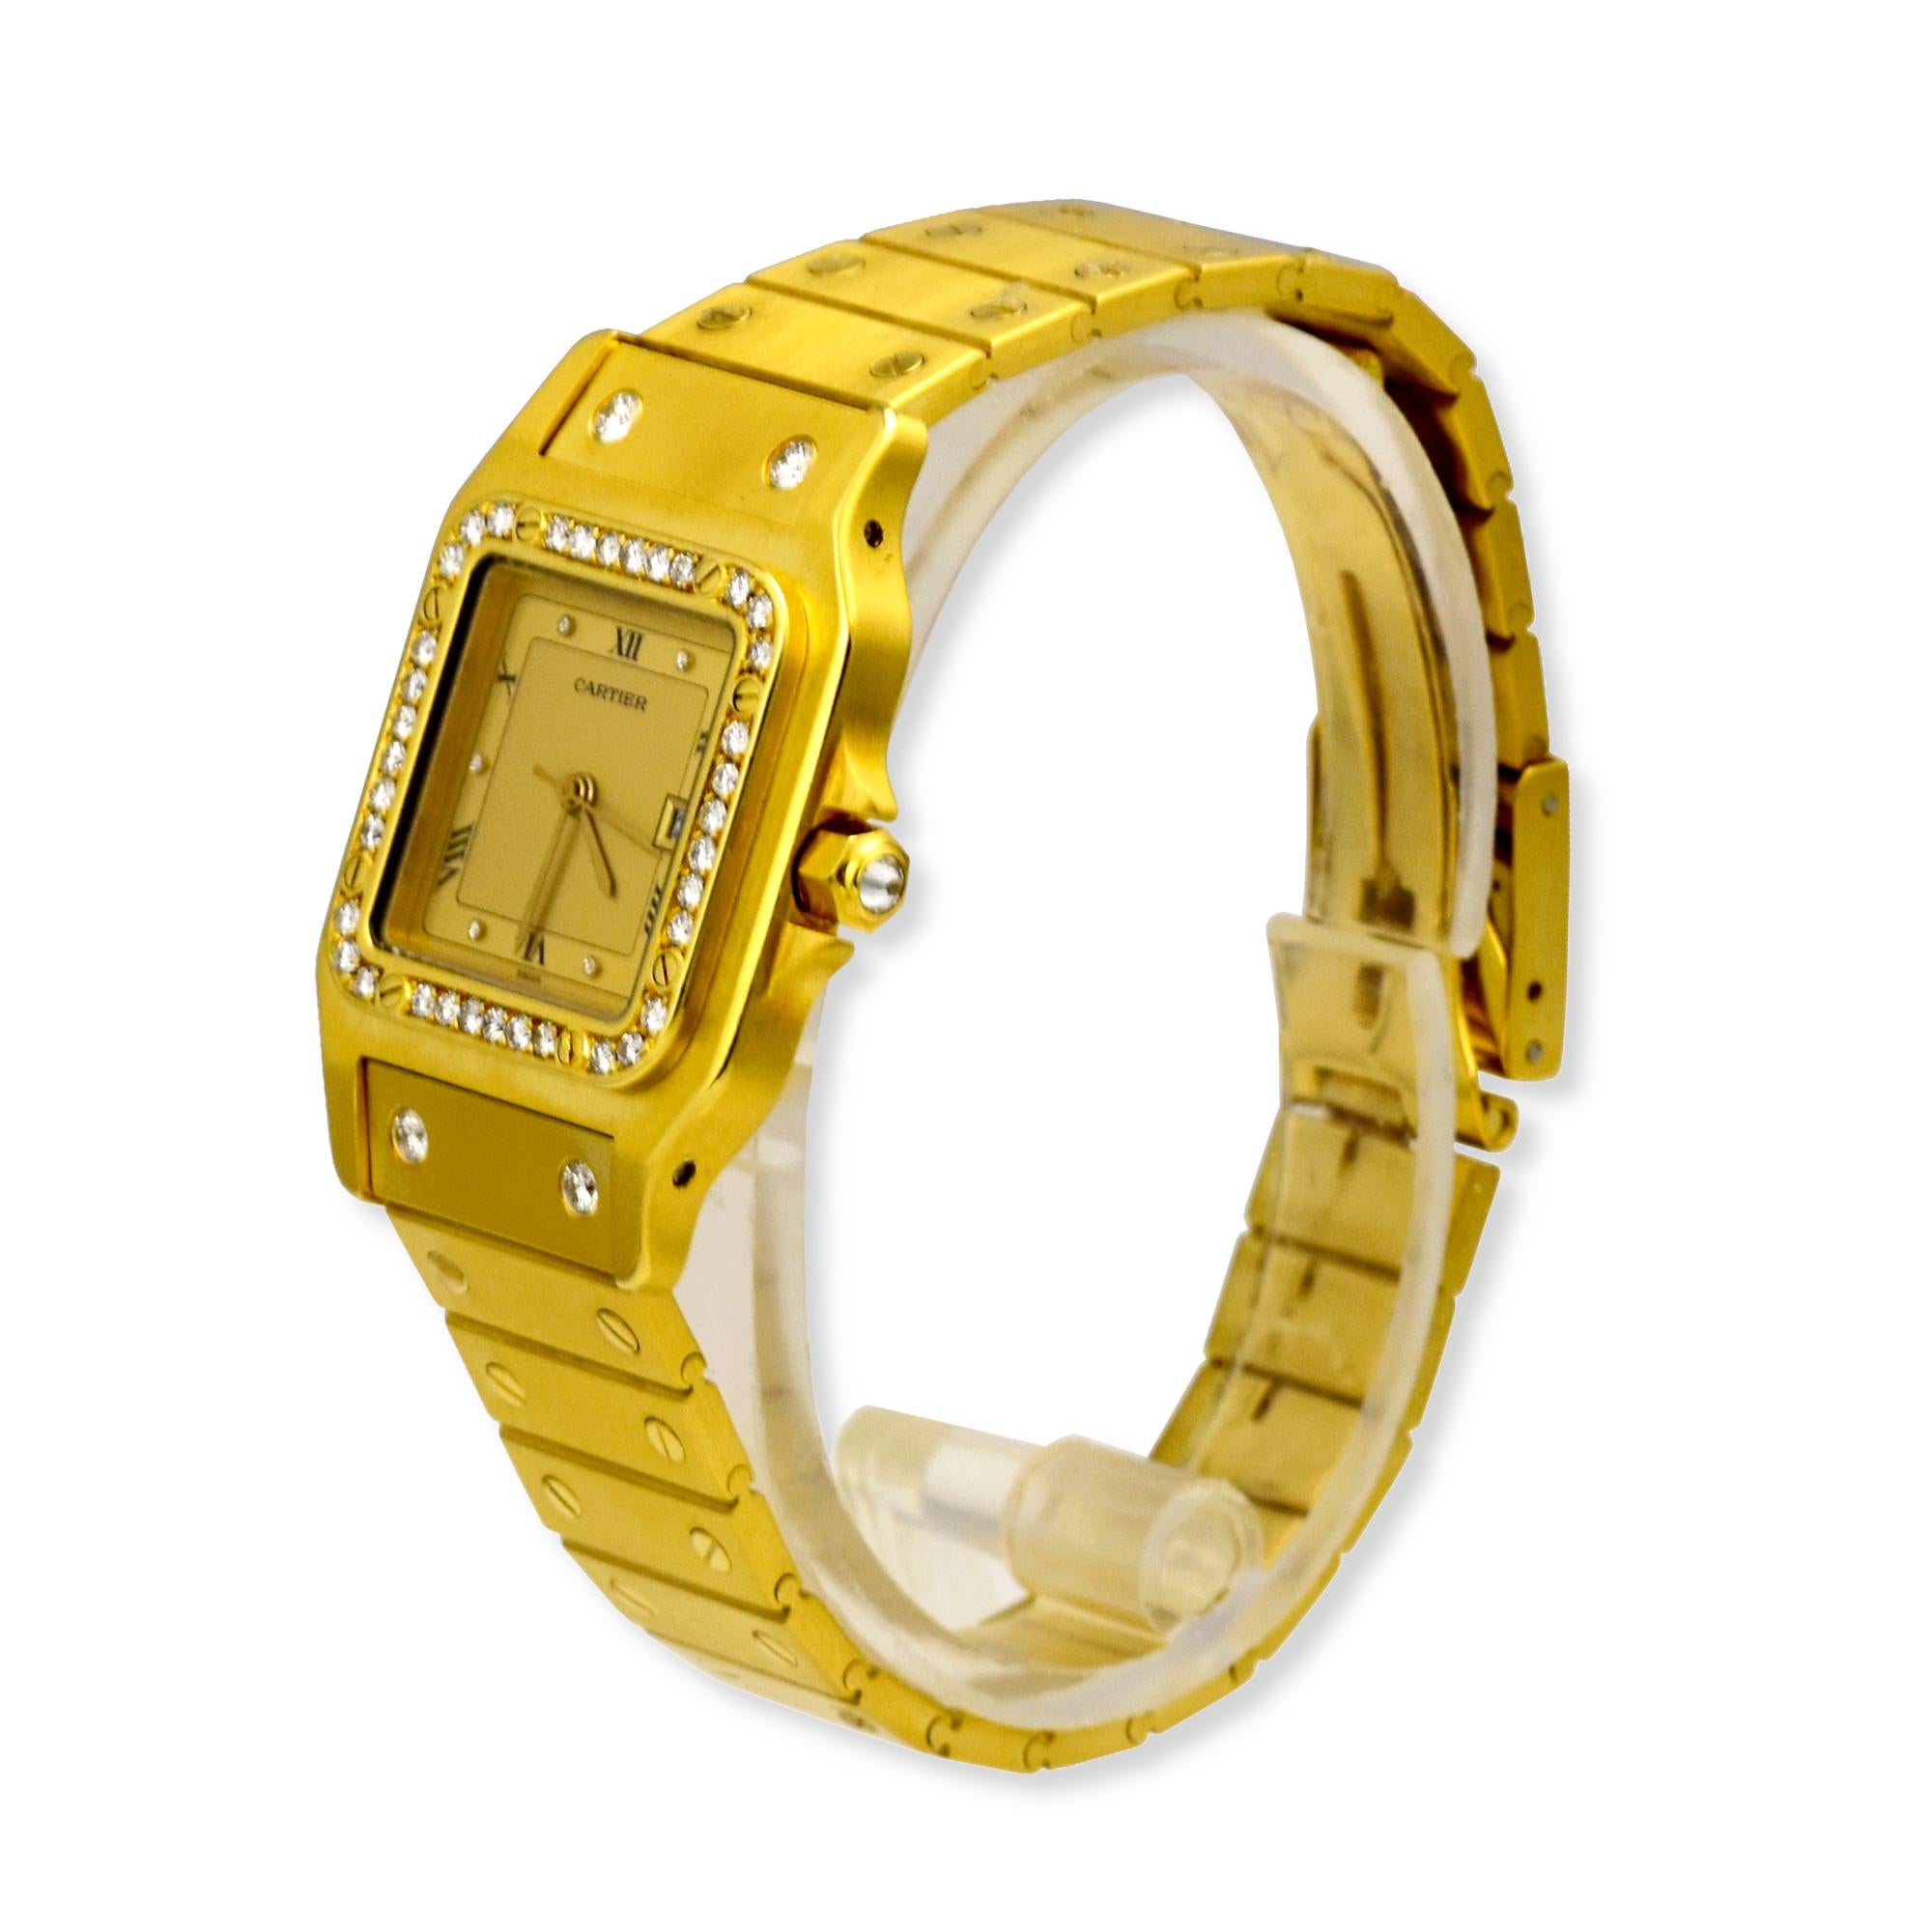 Marke: Cartier

Modell: Santos Galbee 

Uhrwerk: Automatisch 

Gehäusegröße: 29 mm

Zifferblatt: AM Diamond Hour Marker; Gold; Datumsanzeige  

Lünette: AM Diamonds 

Gehäusematerial: Gelbgold

Material des Armbands: 18k Gelbgold 

Kristall: